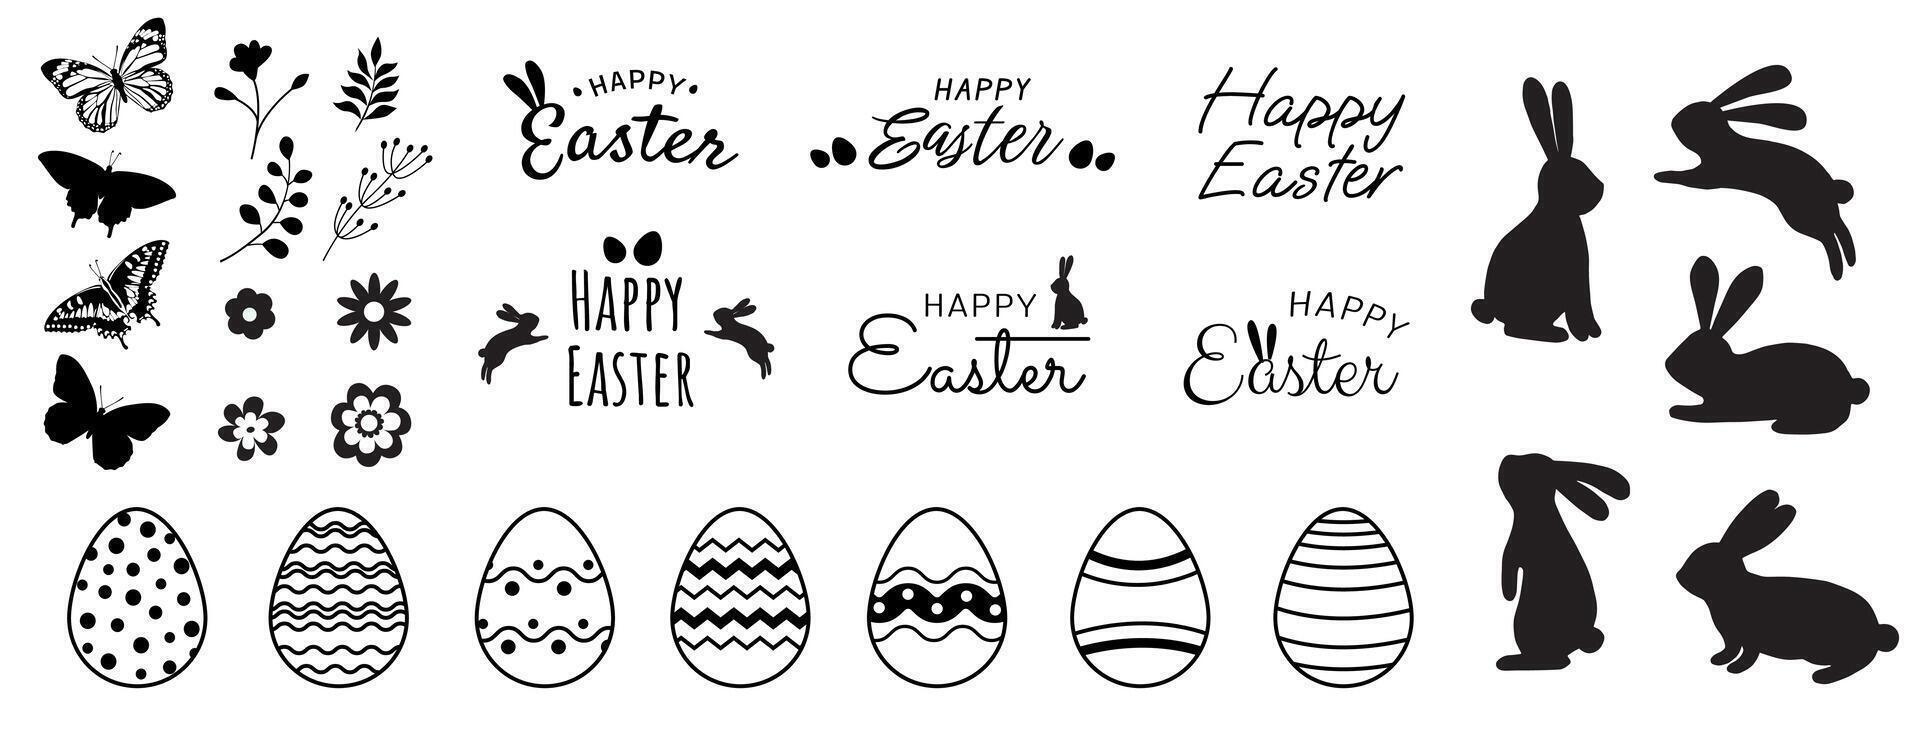 grande vector Pascua de Resurrección colección de elementos para varios diseños el colección contiene conejito siluetas, sencillo flores, Pascua de Resurrección letras y huevos con gráfico patrones.